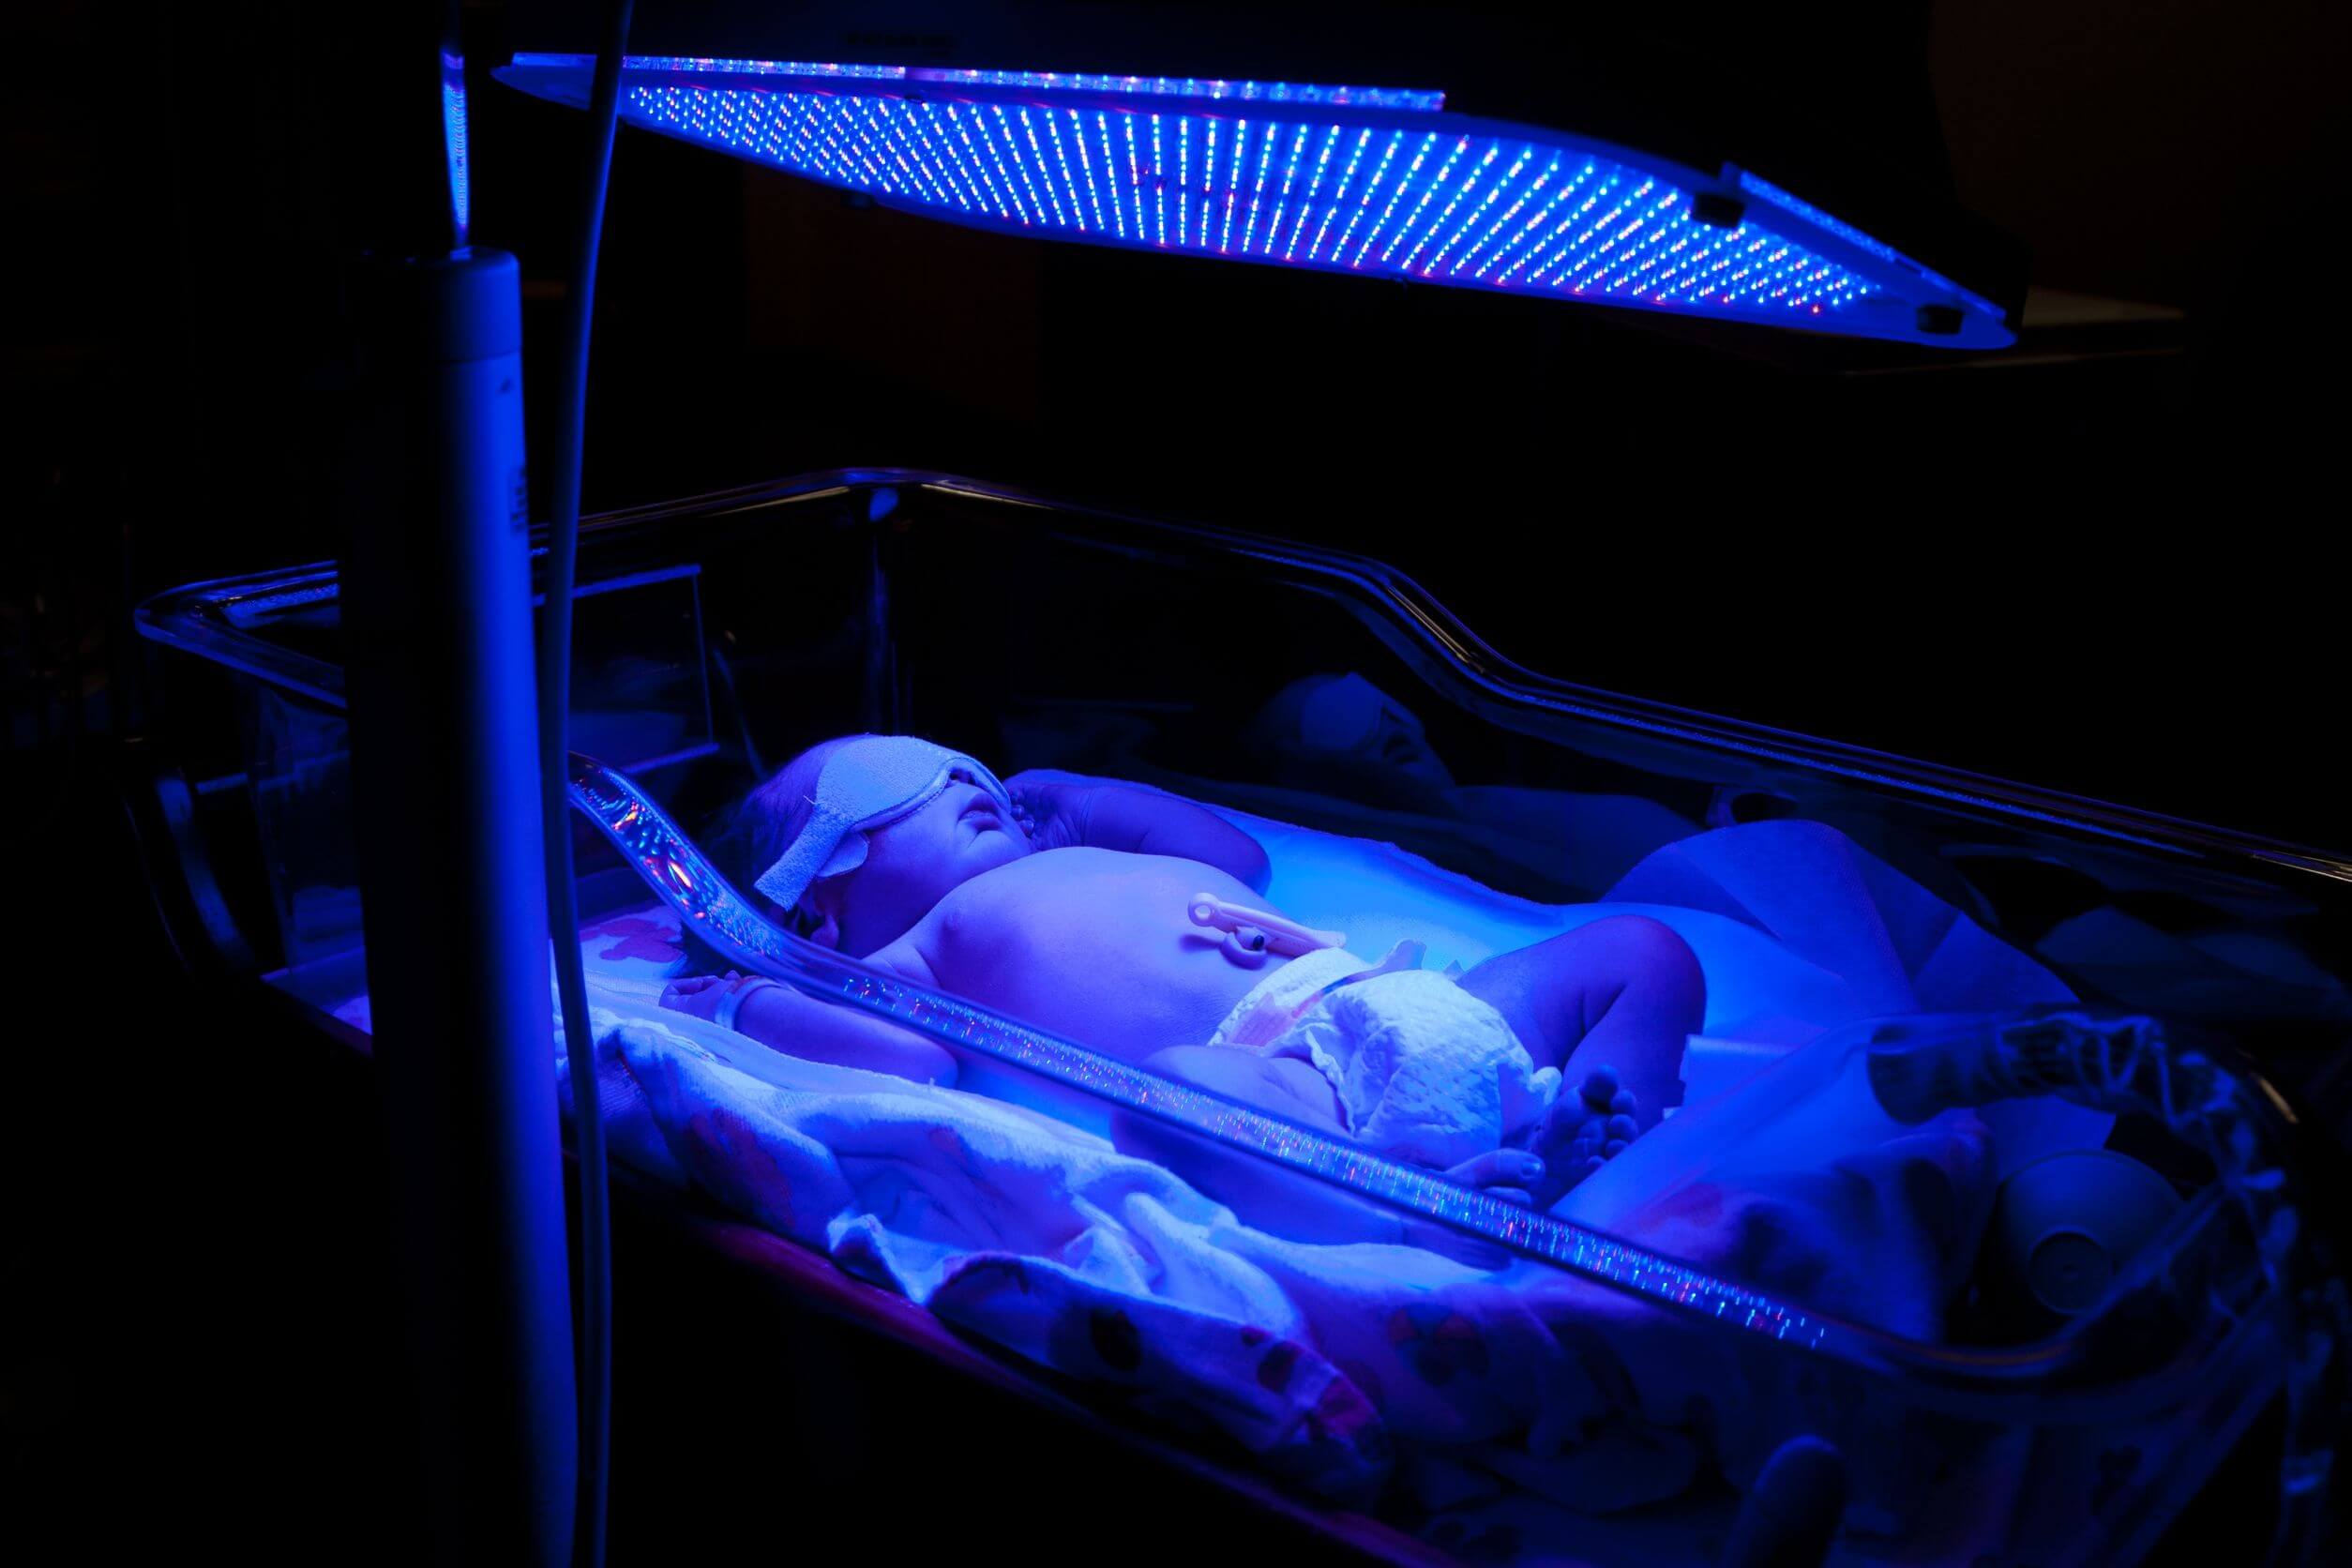 Ett nyfött barn under ett blått ljus.